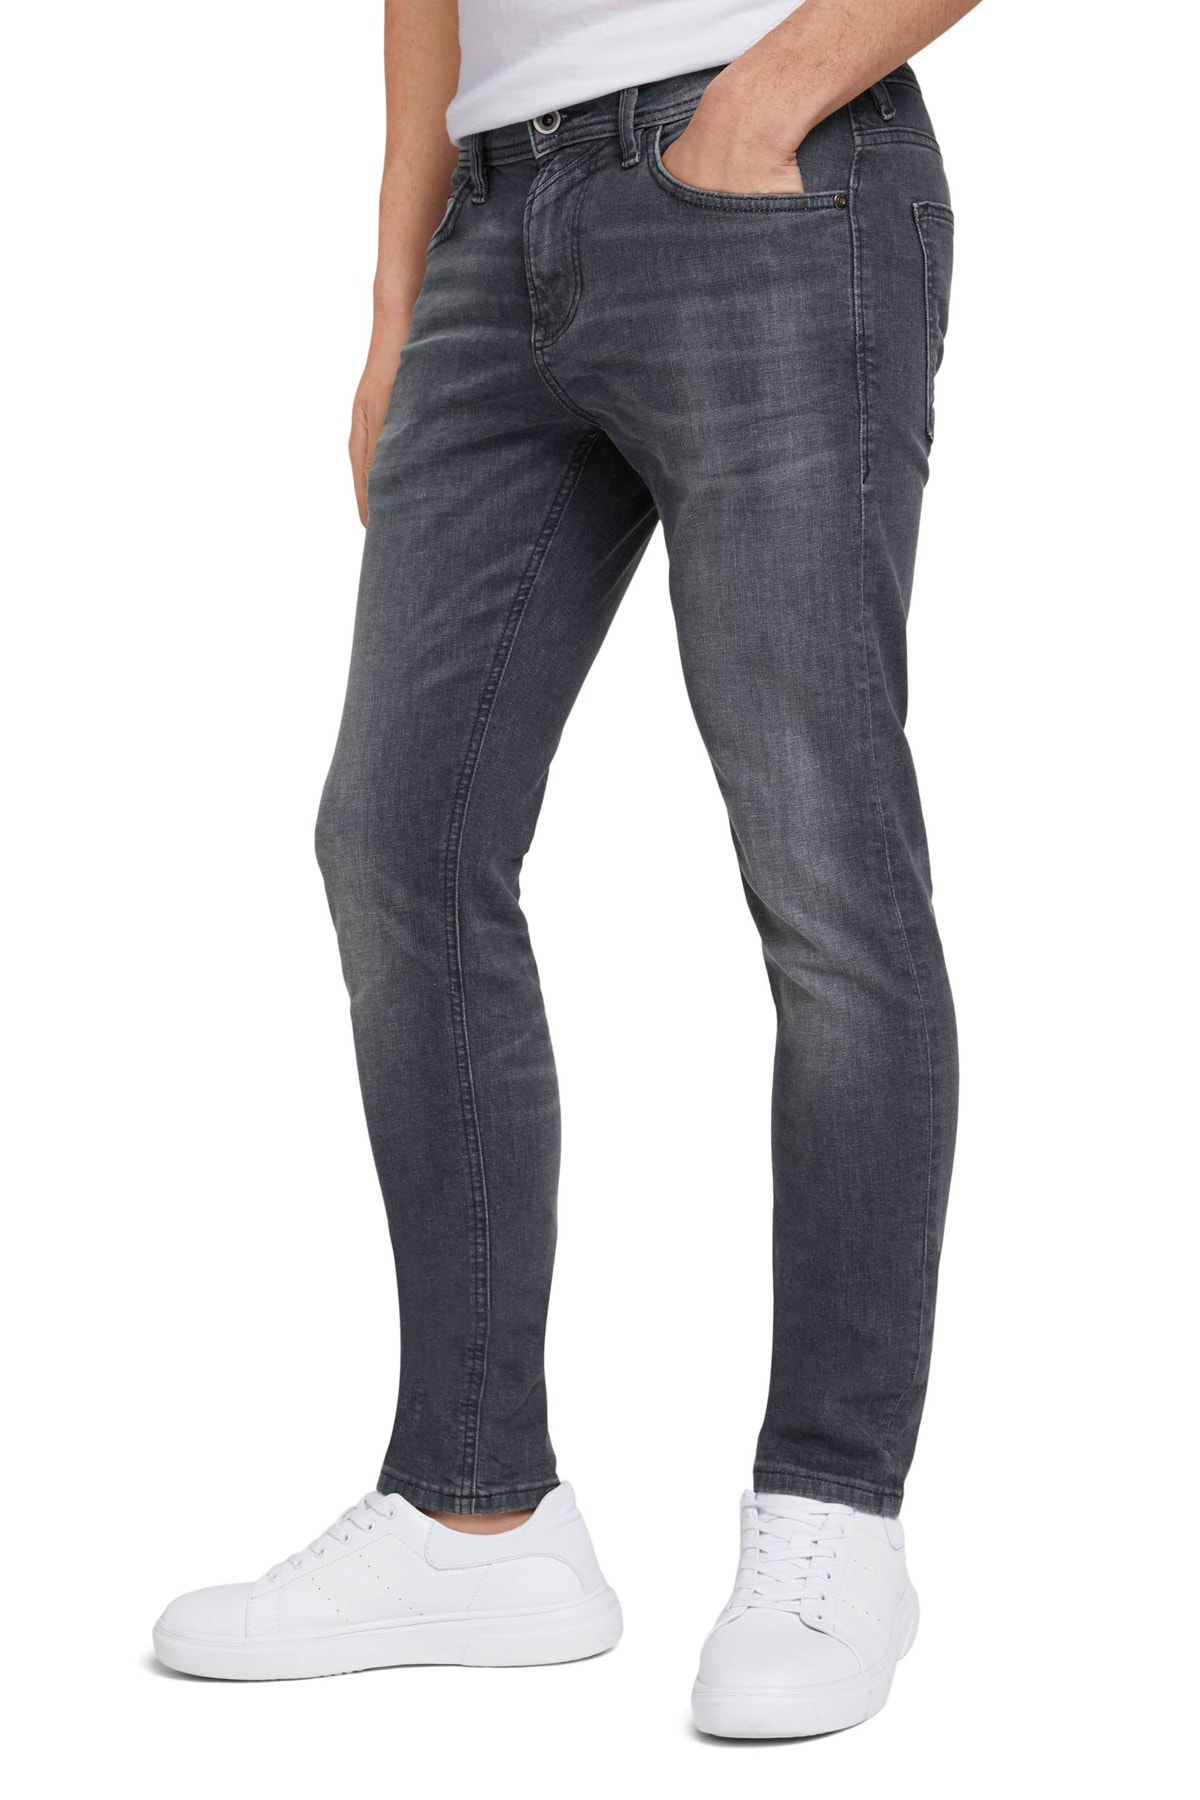 Джинсы - Серые - Скинни Tom Tailor Denim, серый джинсы серые прямые tom tailor denim серый